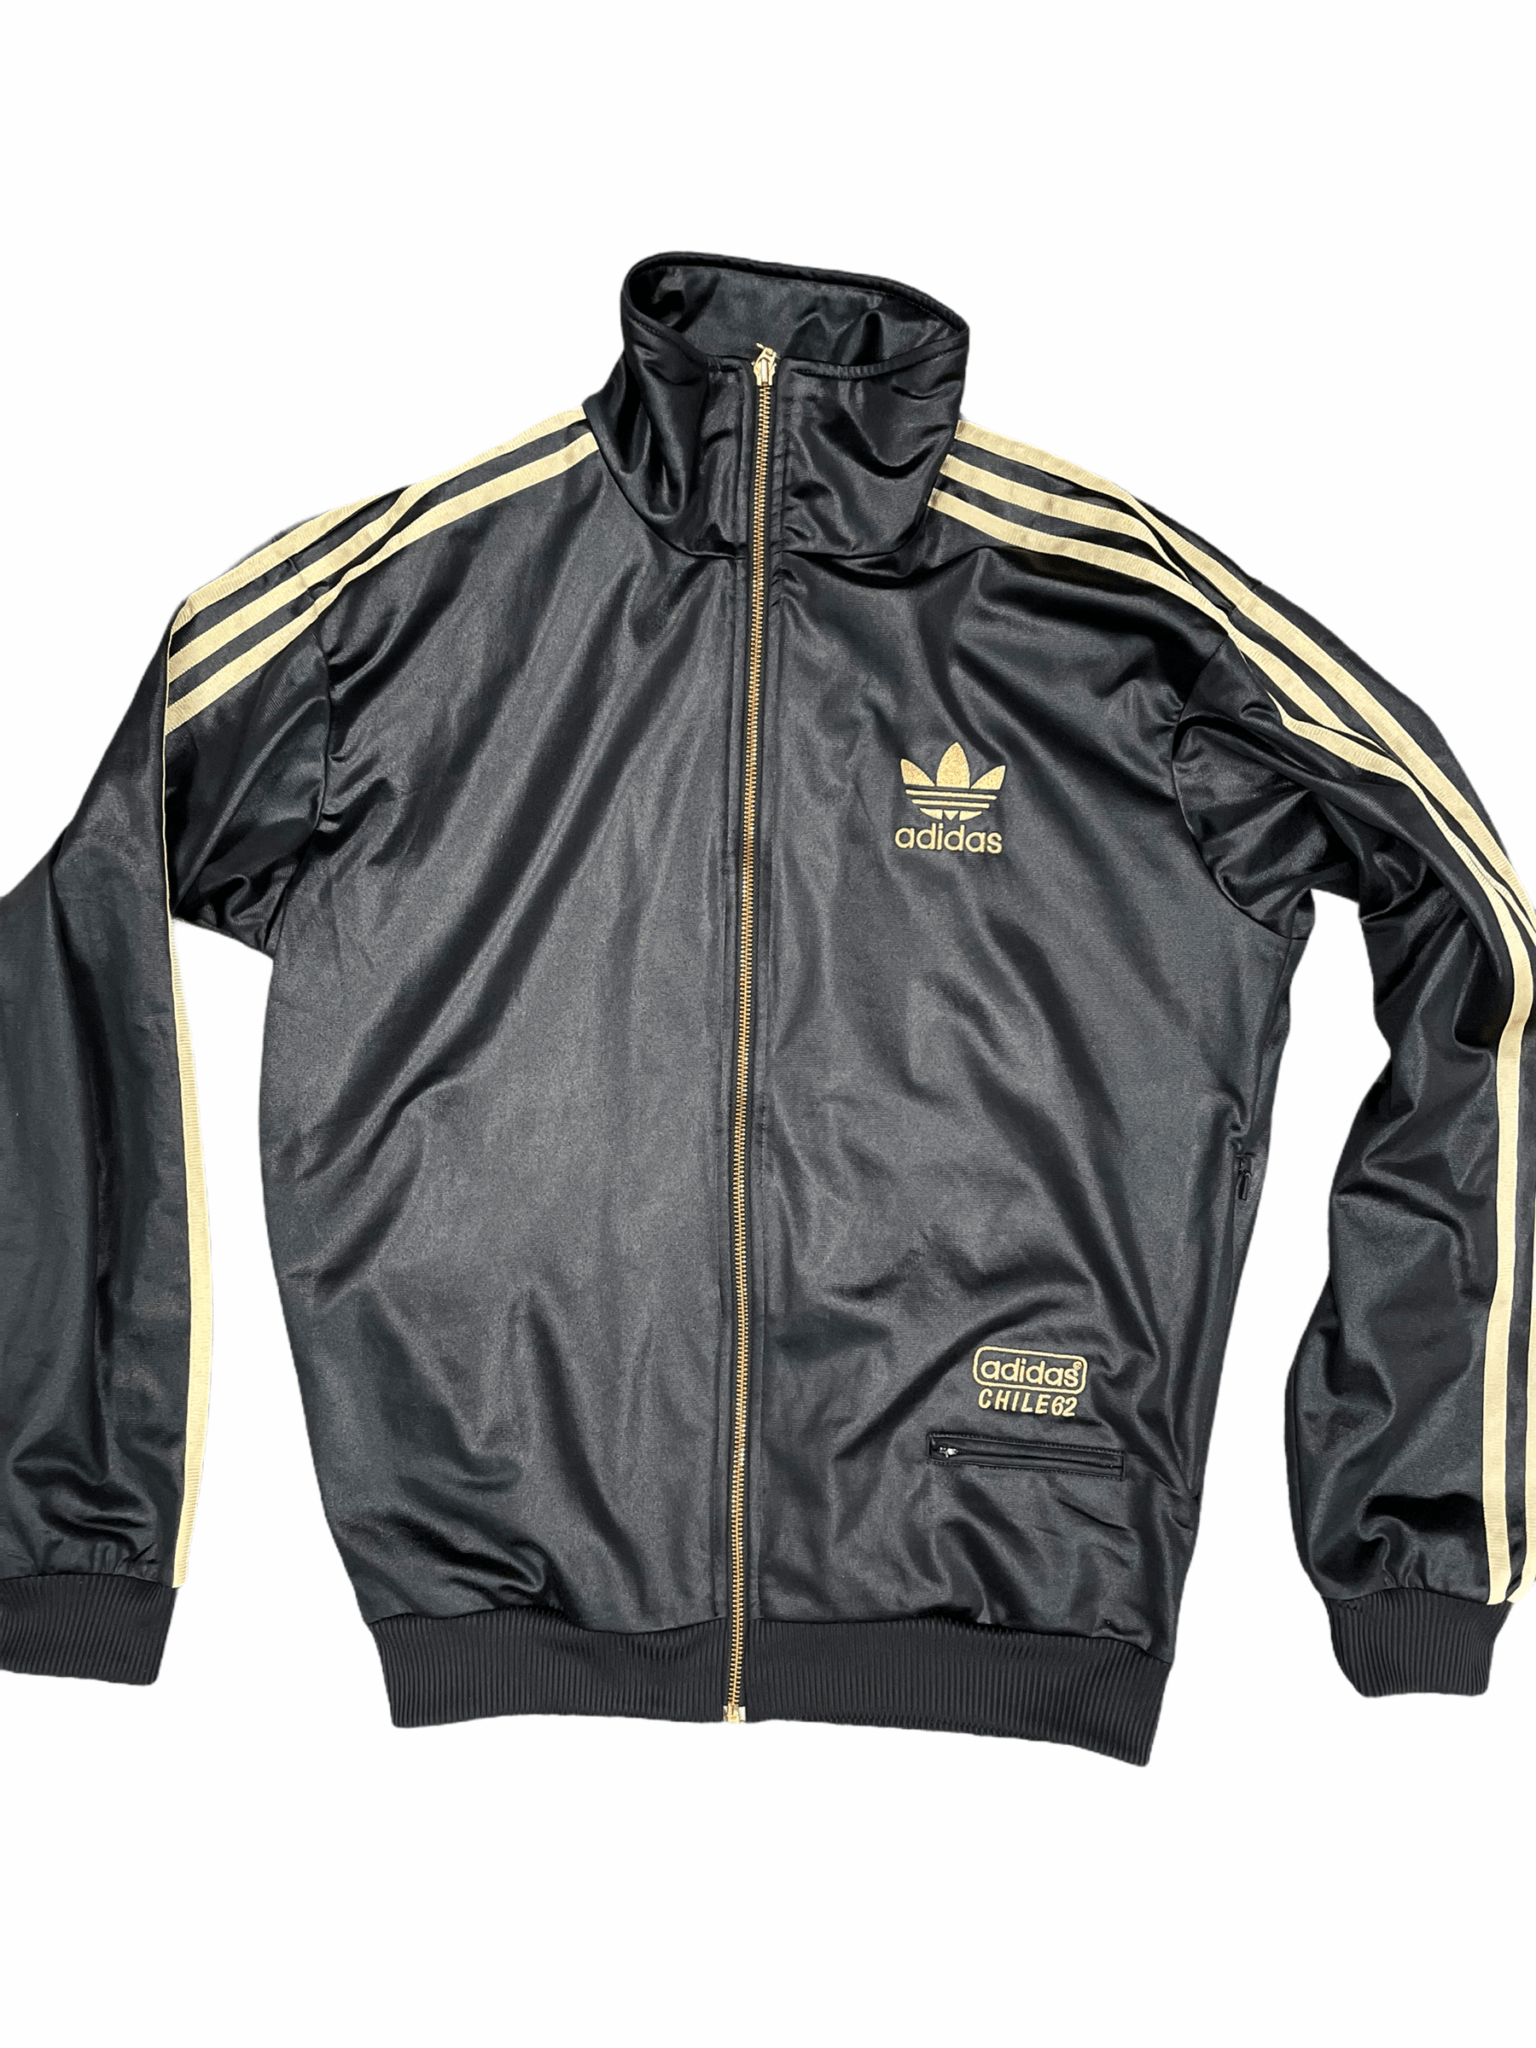 Lille bitte hurtig lette Sports jakke - Adidas - Chile 62 - Gutzag - Vintage Clothing